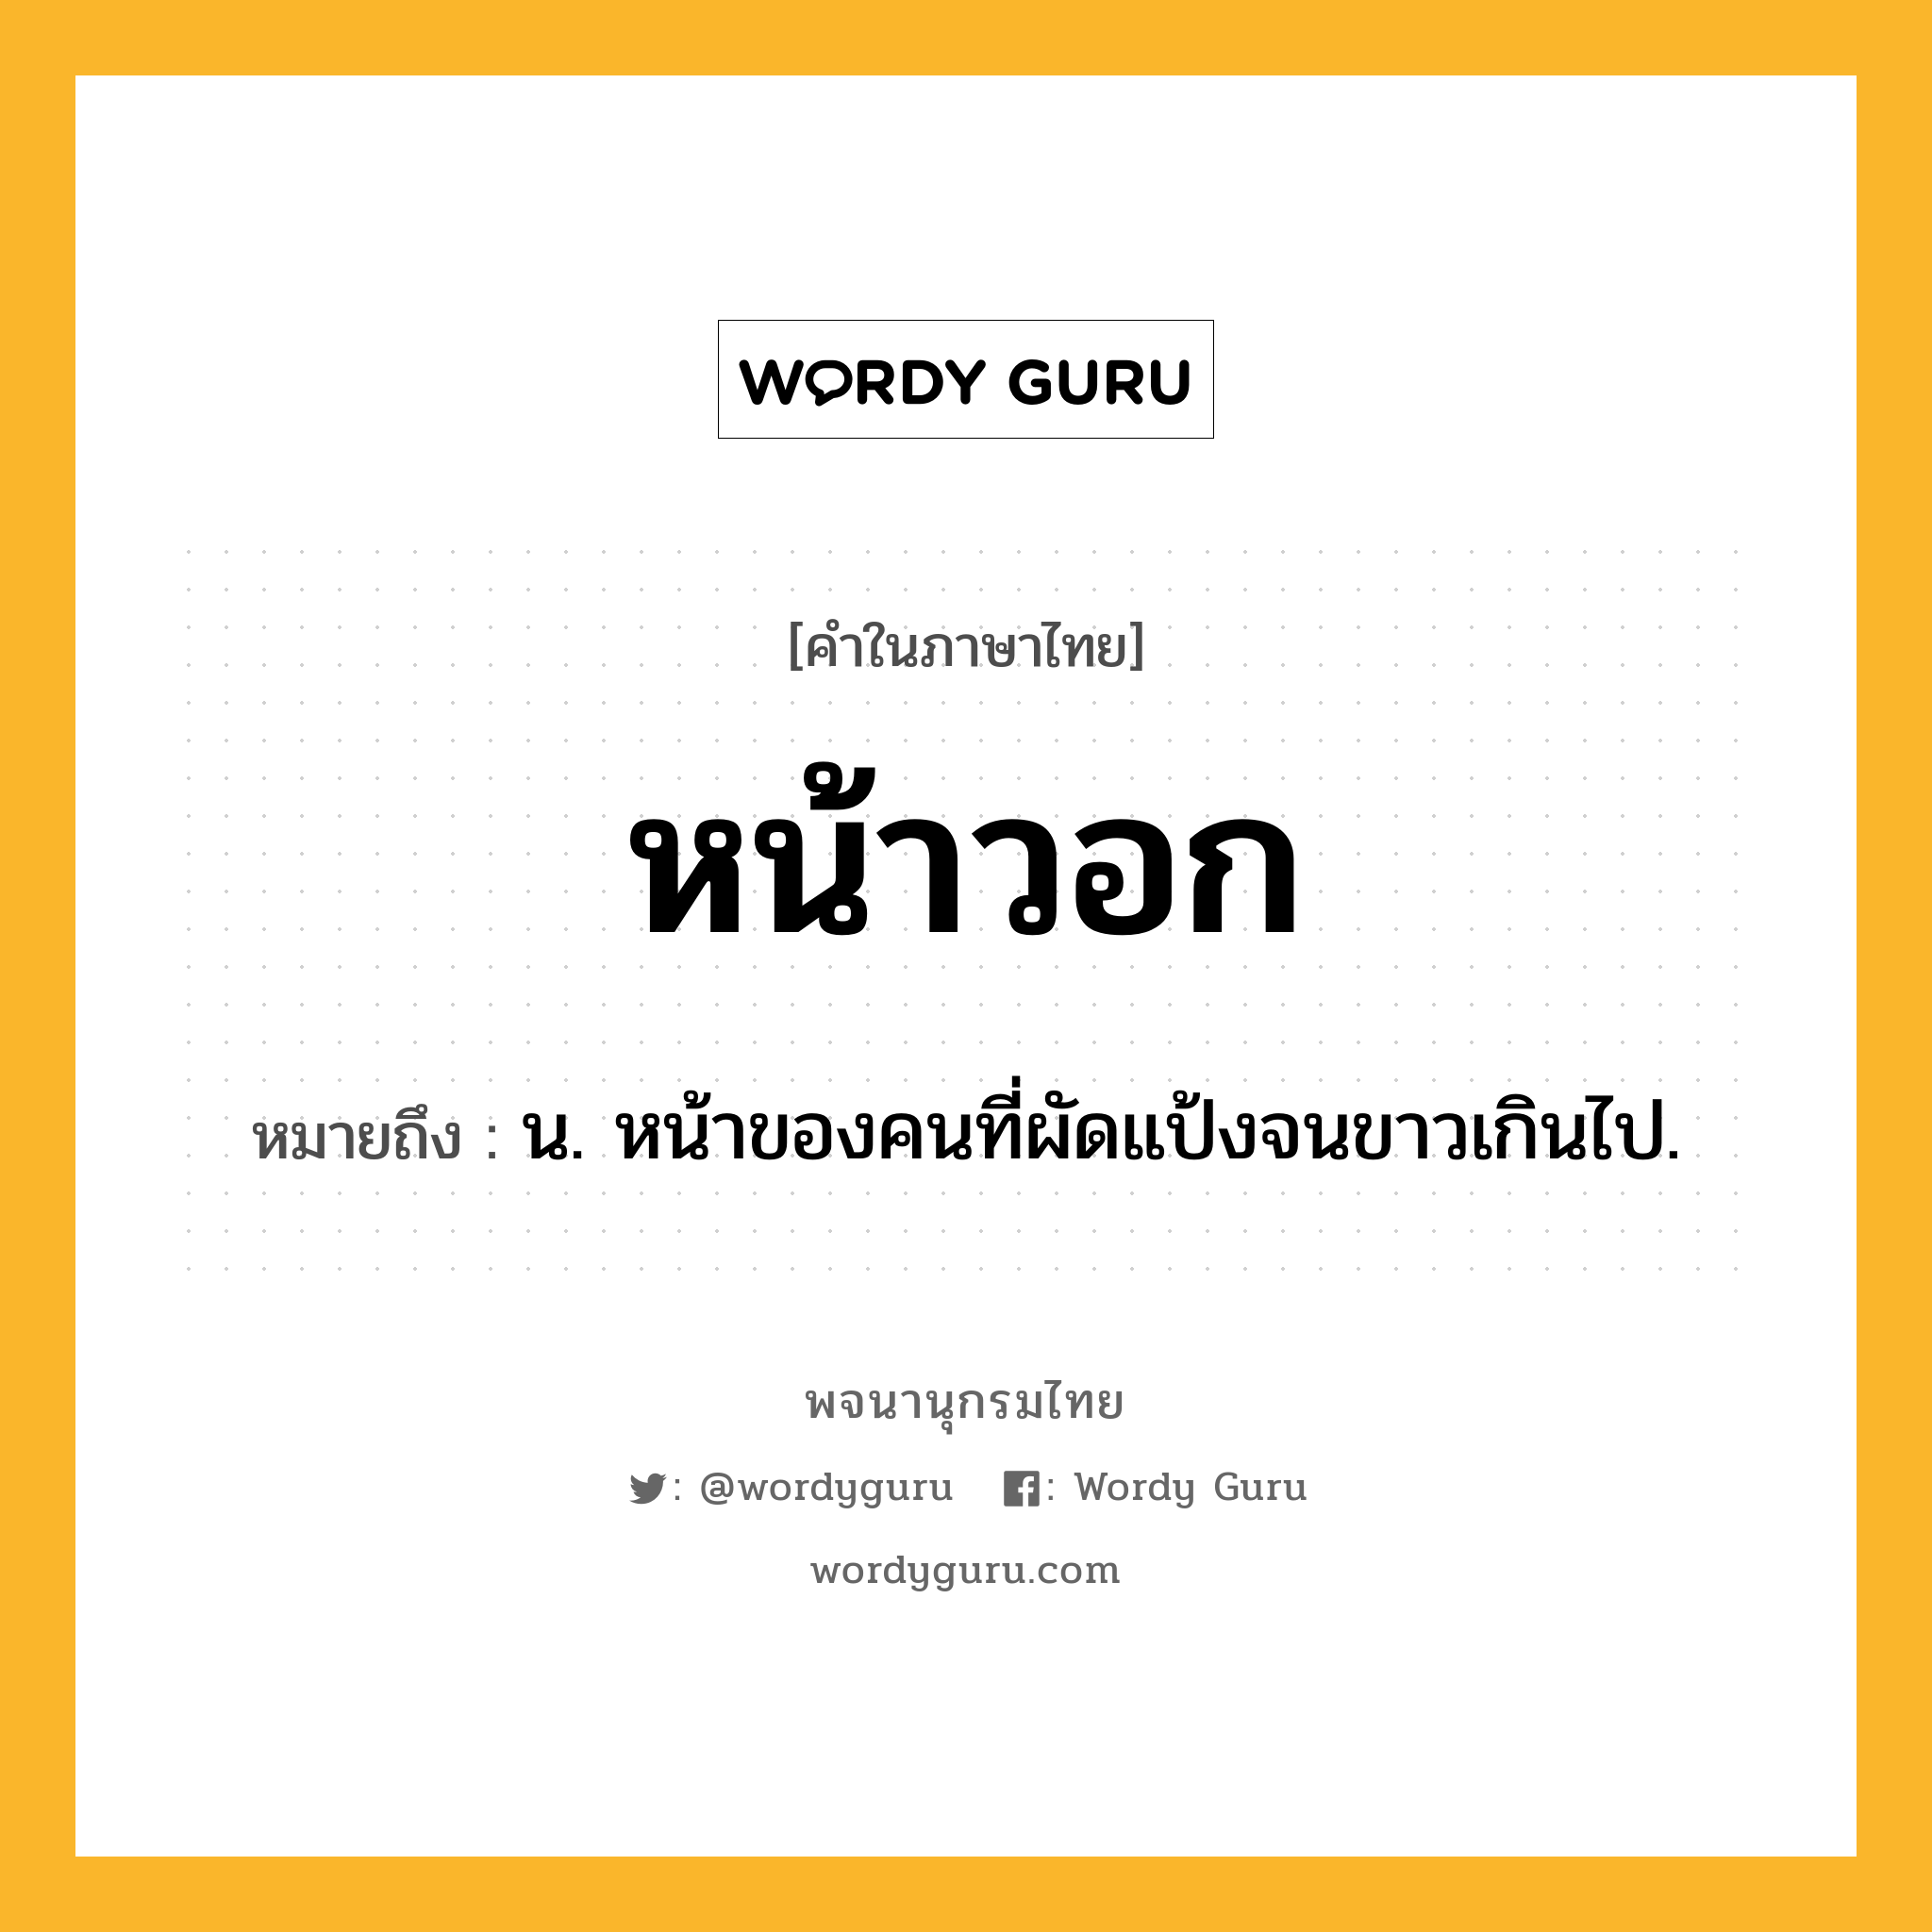 หน้าวอก ความหมาย หมายถึงอะไร?, คำในภาษาไทย หน้าวอก หมายถึง น. หน้าของคนที่ผัดแป้งจนขาวเกินไป.